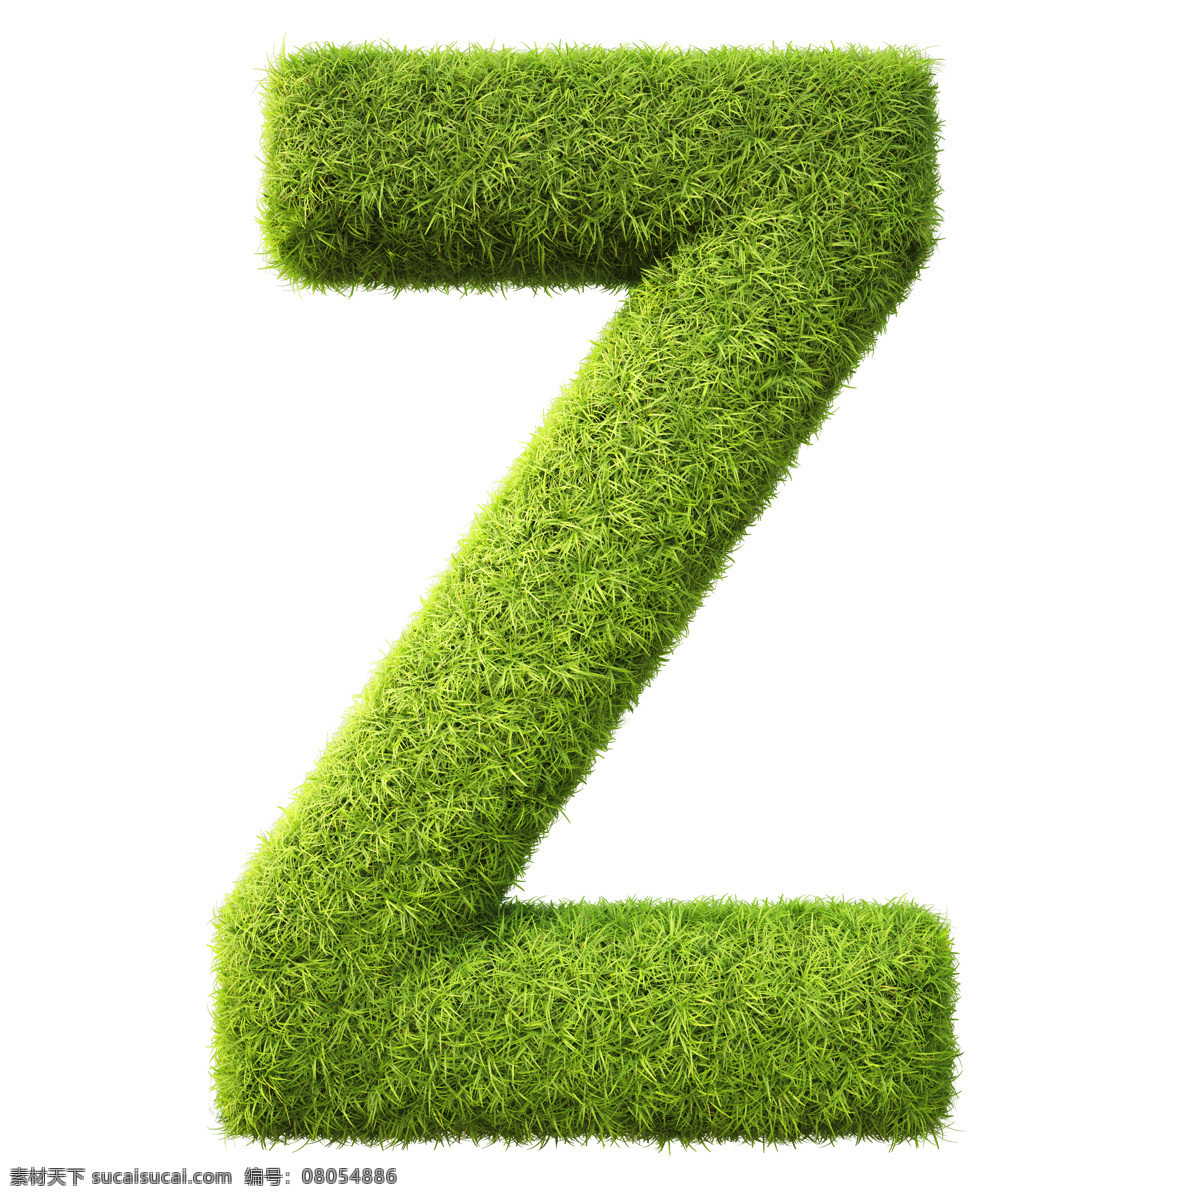 时尚 手绘 装饰 字母 字母设计 绿 草 设计素材 草字 母模 板 绿草字母 3d立体字母 数字主题 矢量图 艺术字